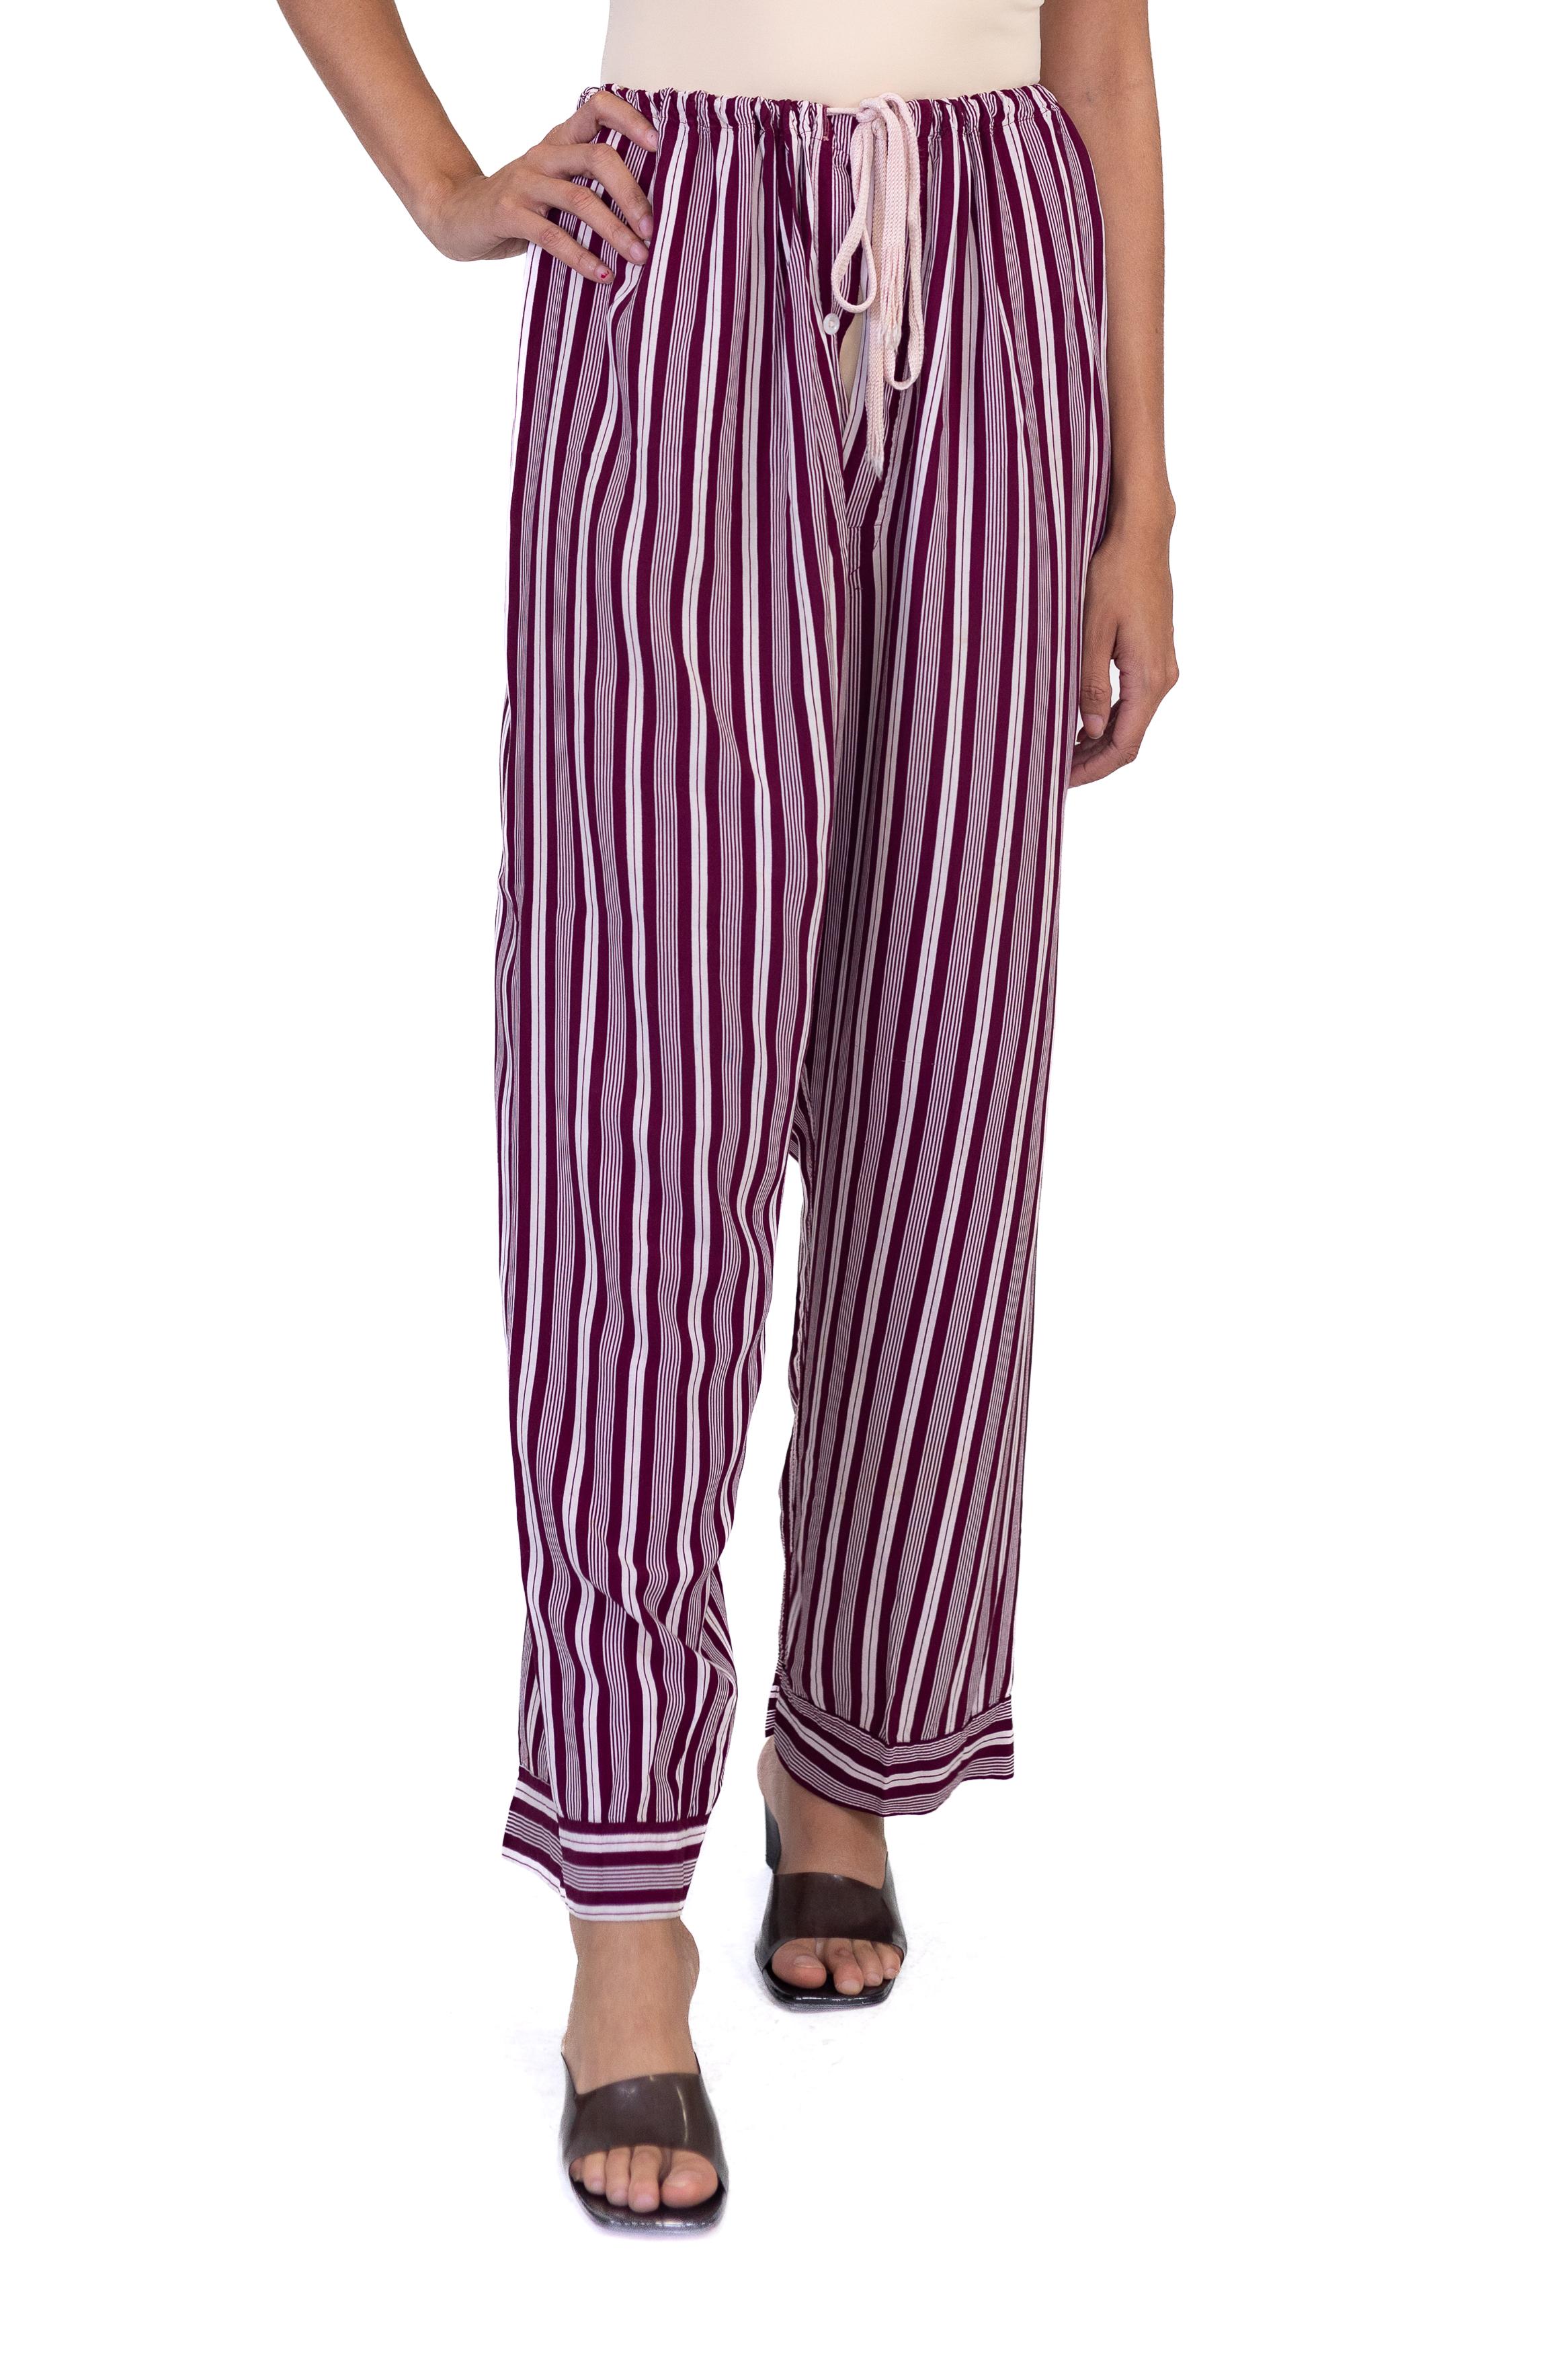 1940S Burgundy Striped Rayon Pajama Pants For Sale 4